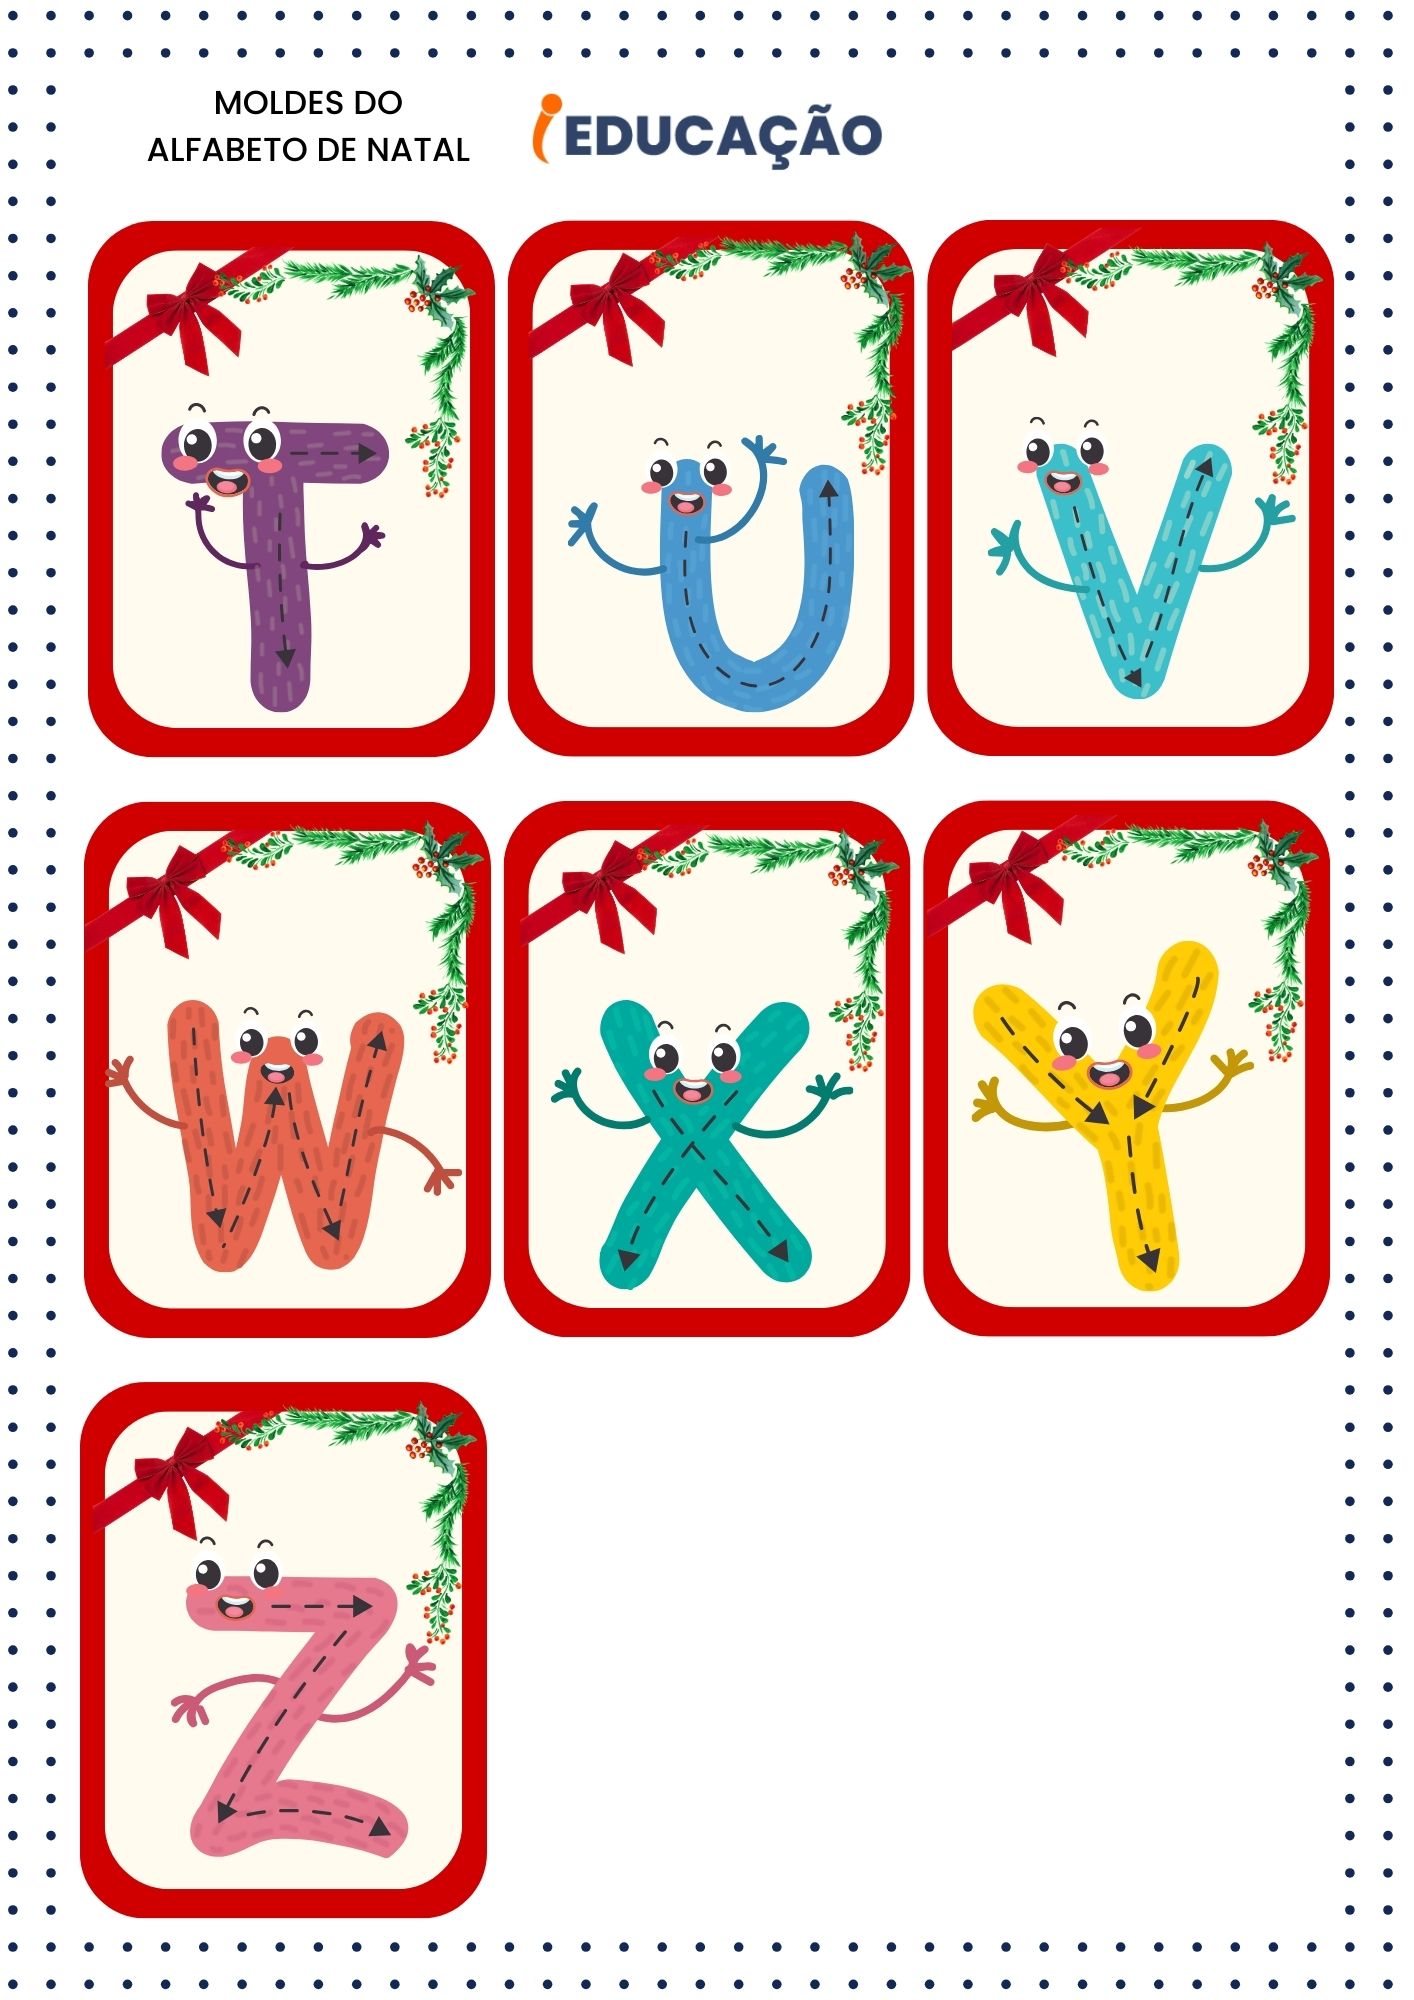 Alfabeto natalino- letras 